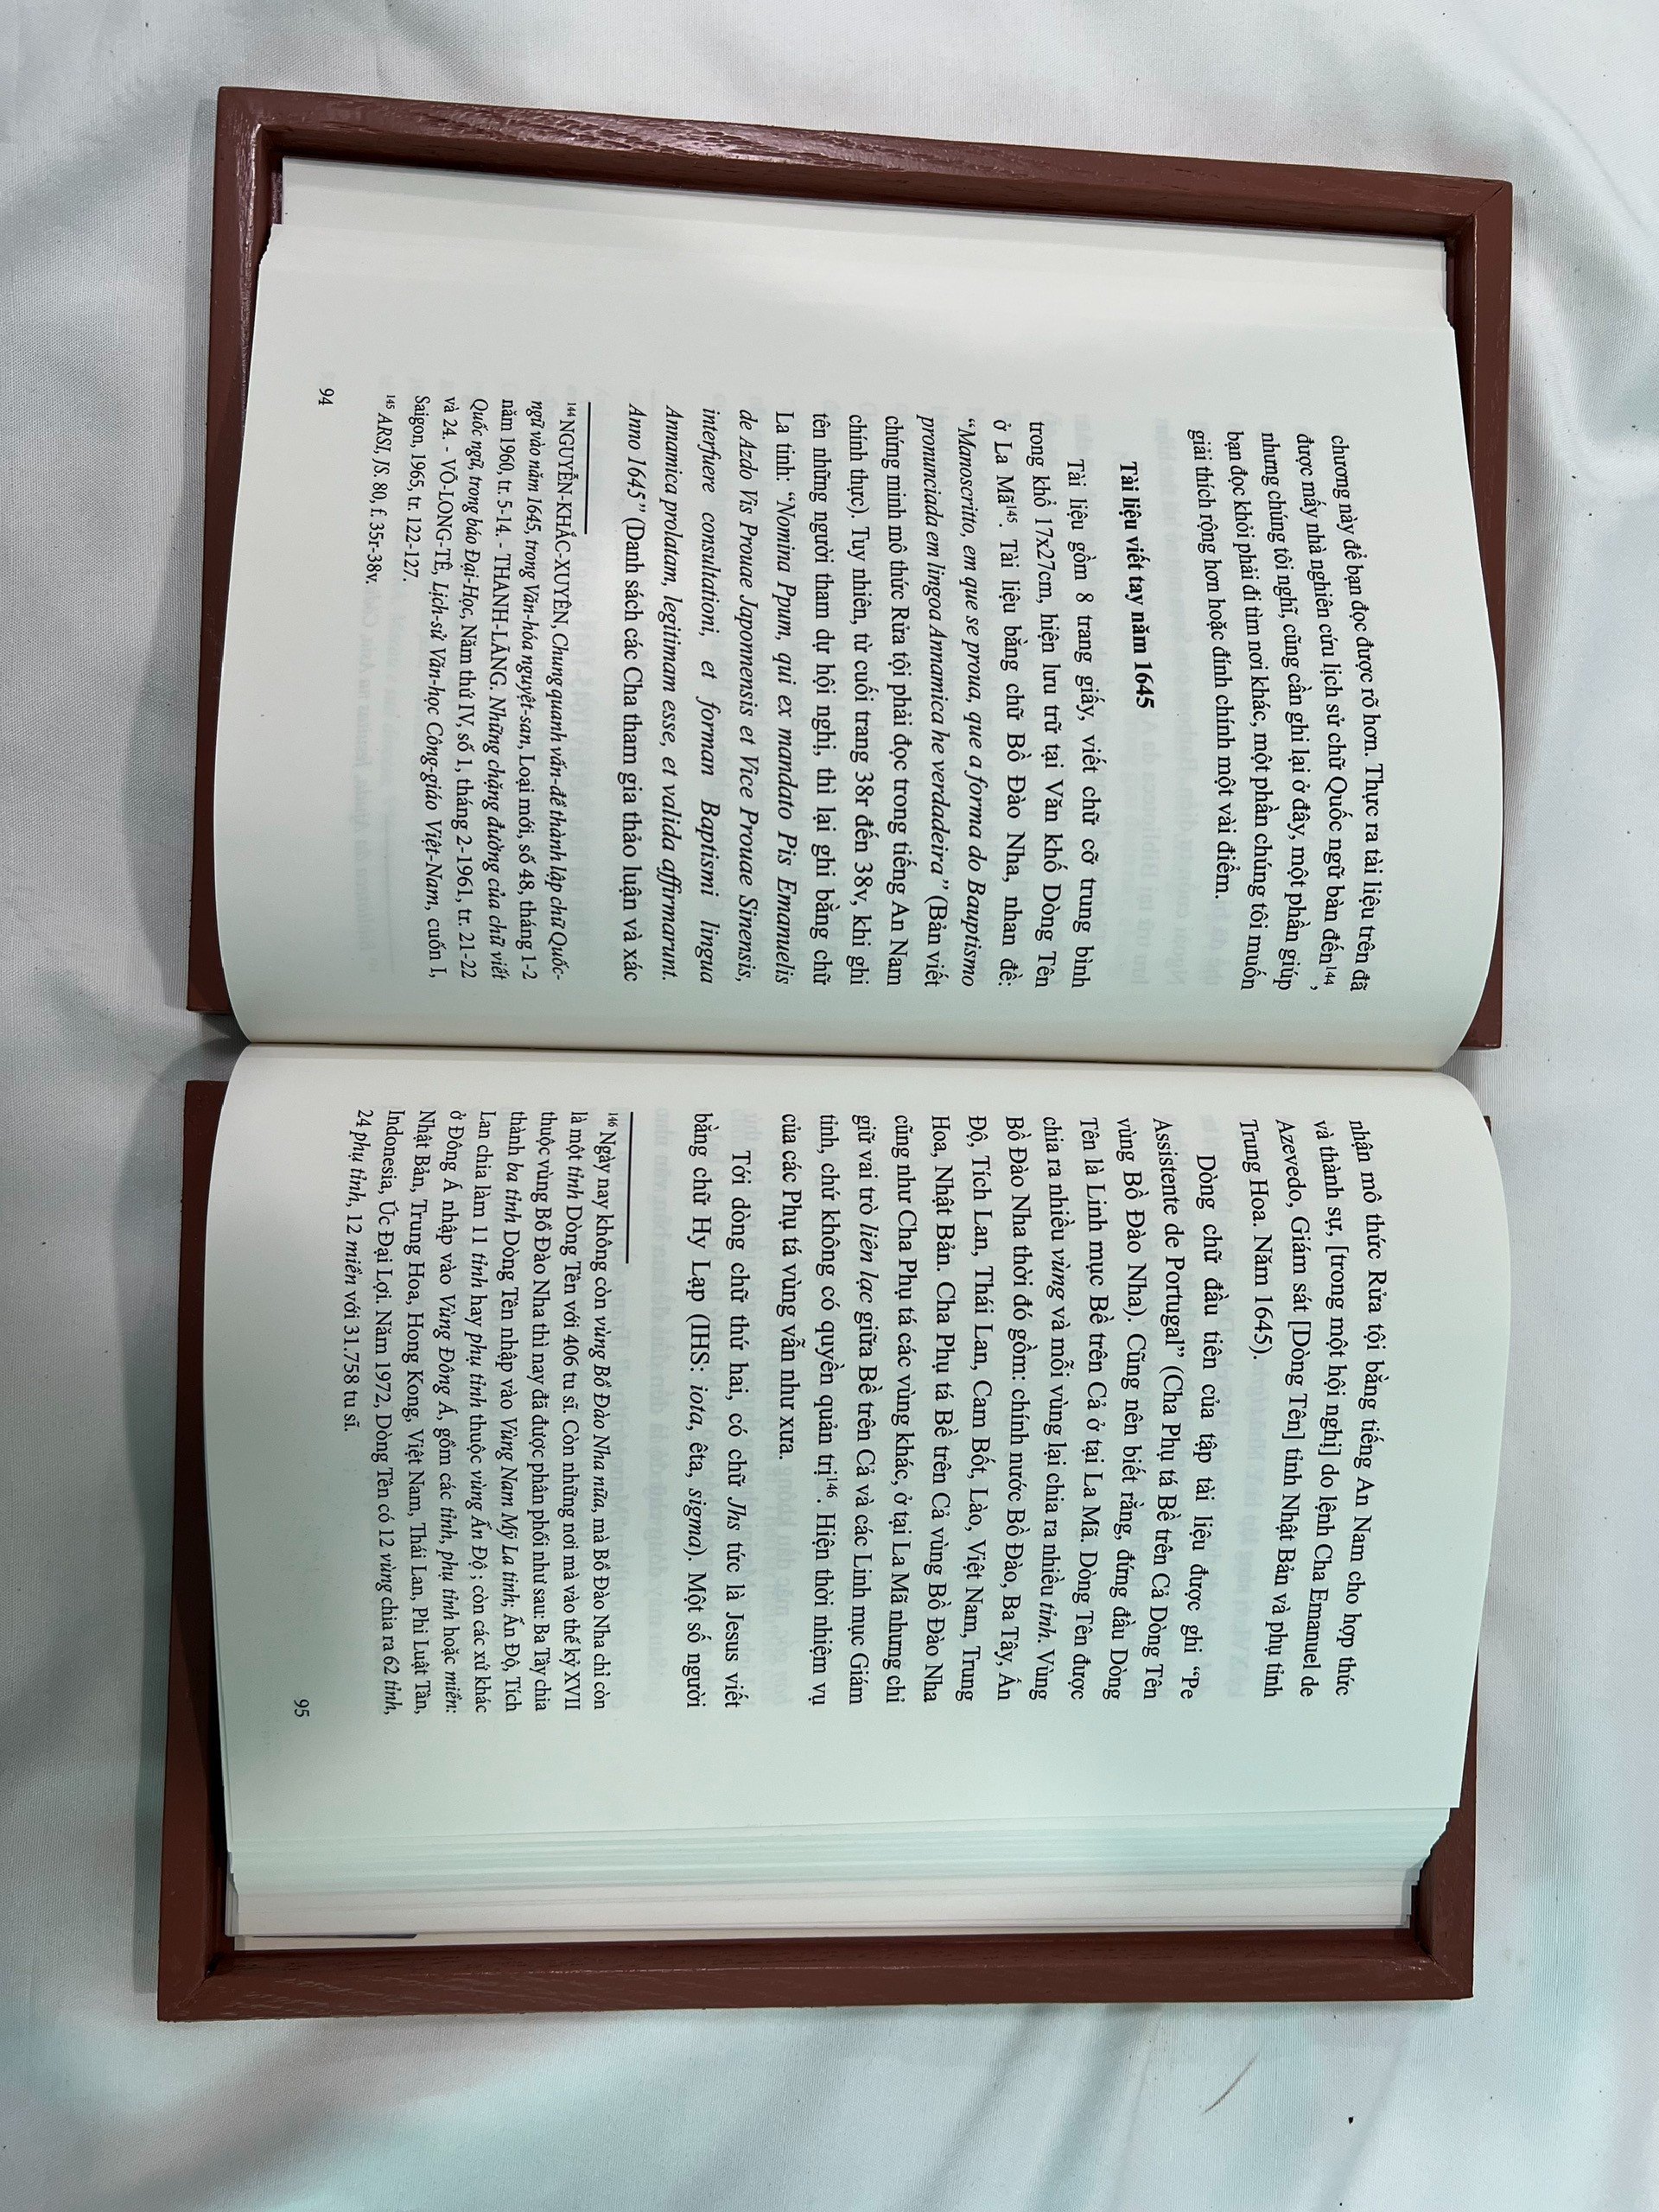 (Ấn bản đặc biệt sách S100) (Bìa gỗ hộp đựng trang trọng, giấy mỹ thuật) LỊCH SỬ CHỮ QUỐC NGỮ (1620-1659) - Đỗ Quang Chính - ThaiHaBooks